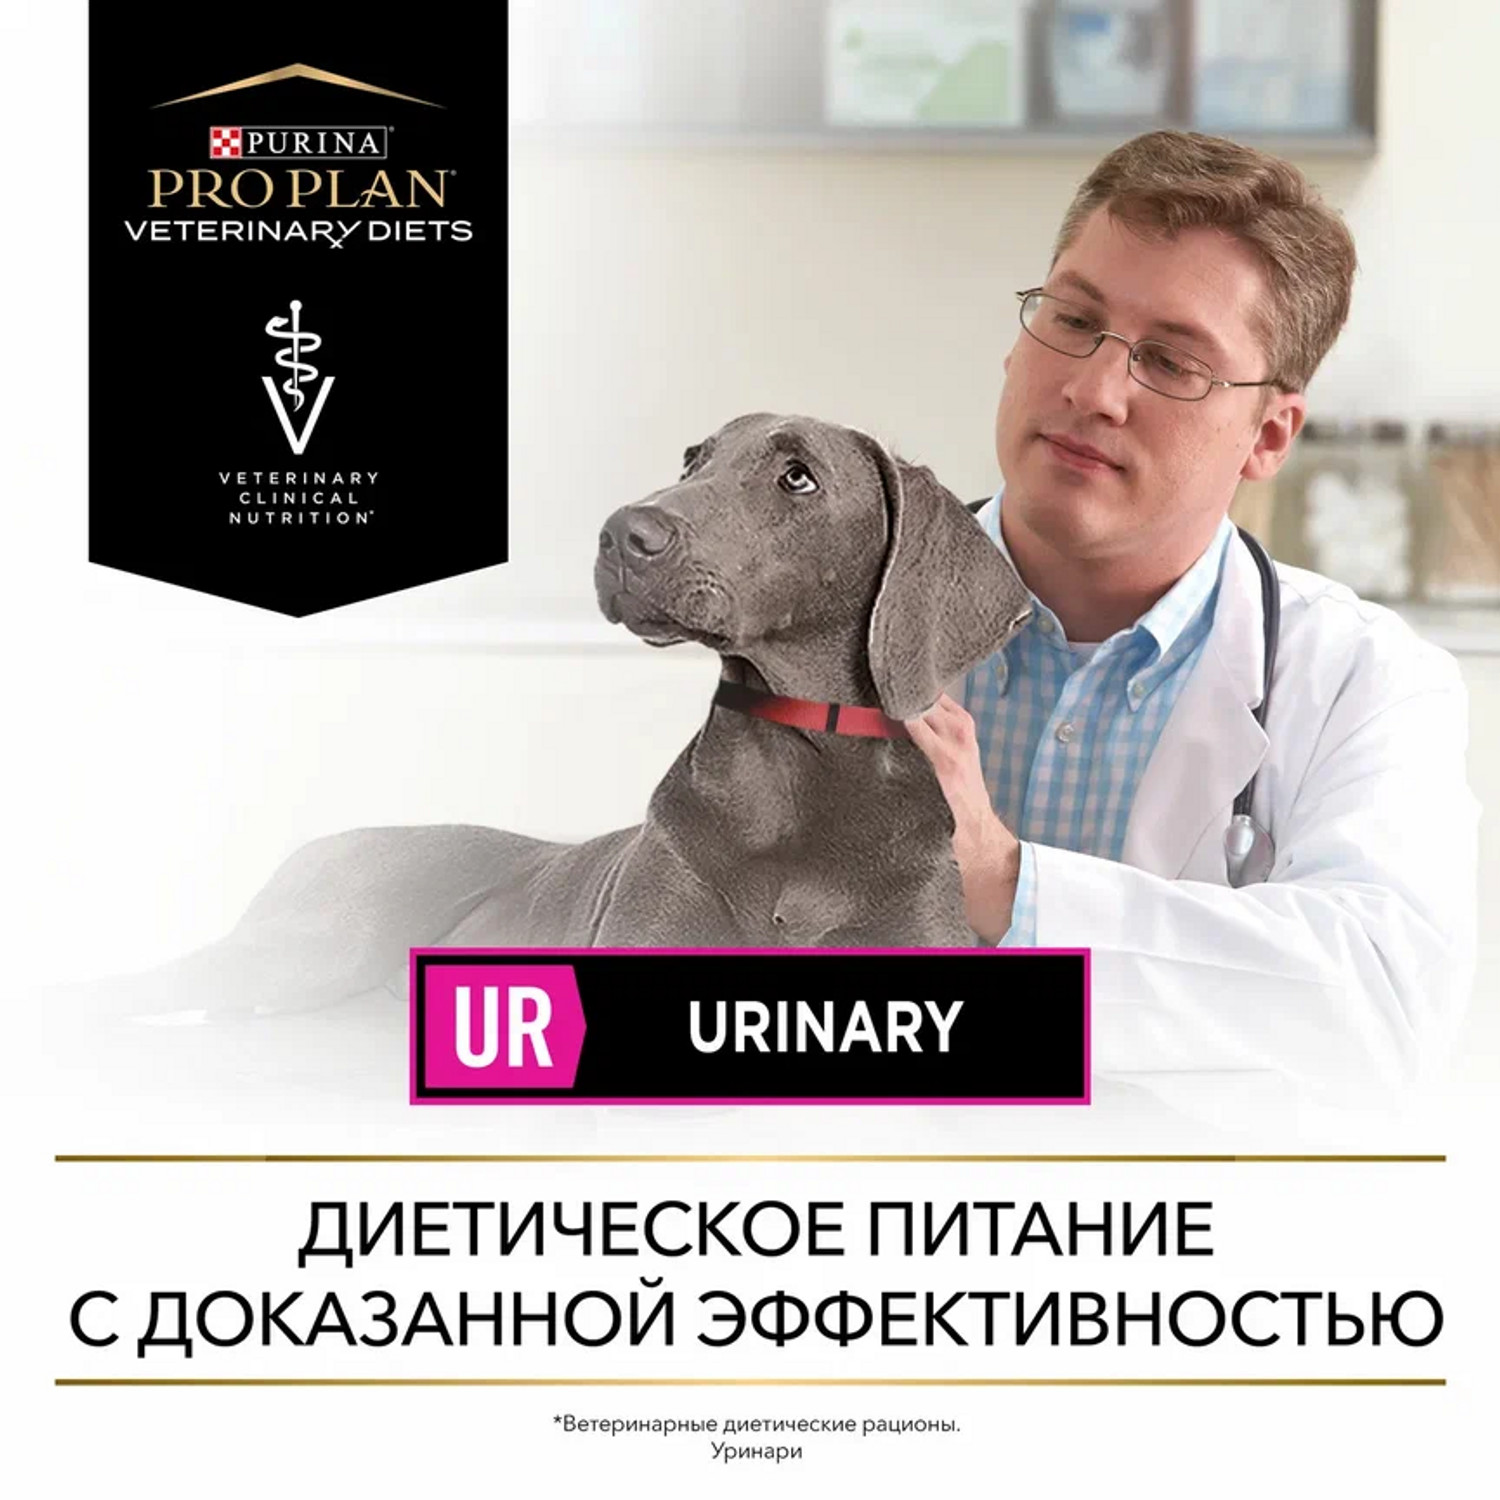 Корм для собак Purina Pro Plan Veterinary diets UR Urinary для растворения струвитных камней со свойствами подкисления мочи и низким содержанием магния 1.5кг - фото 13